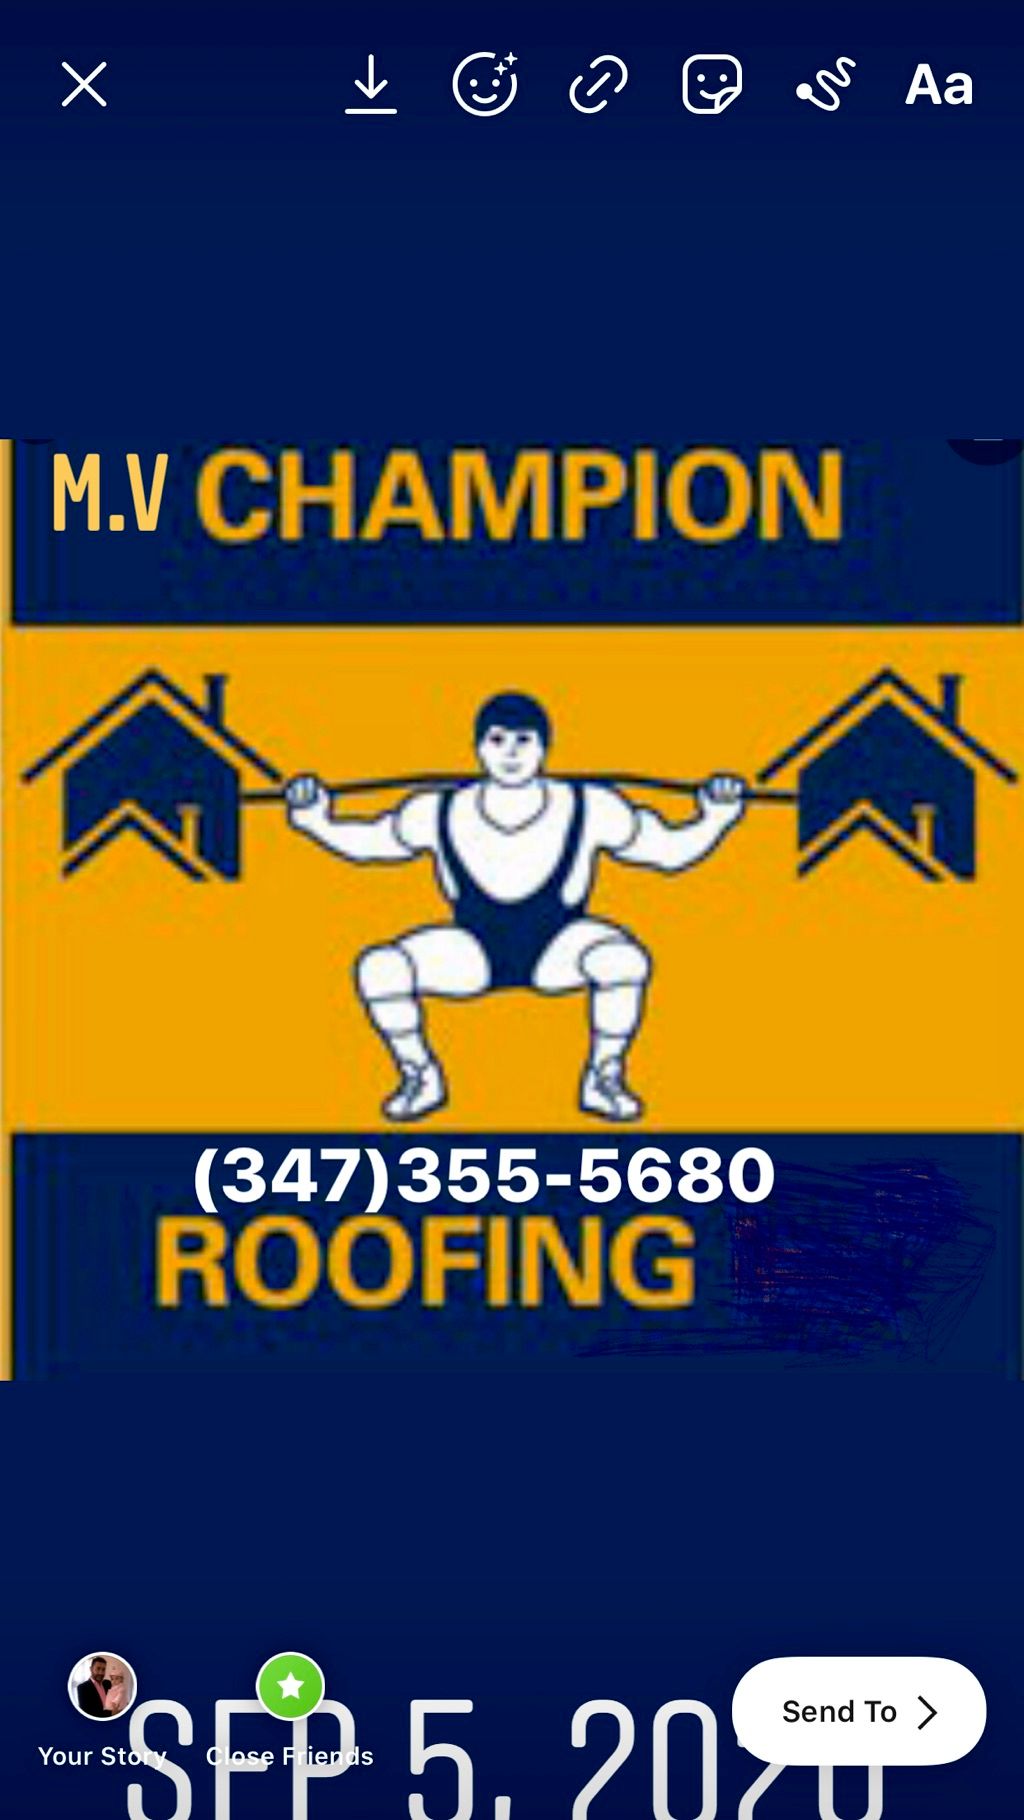 M.V Champion Roofing